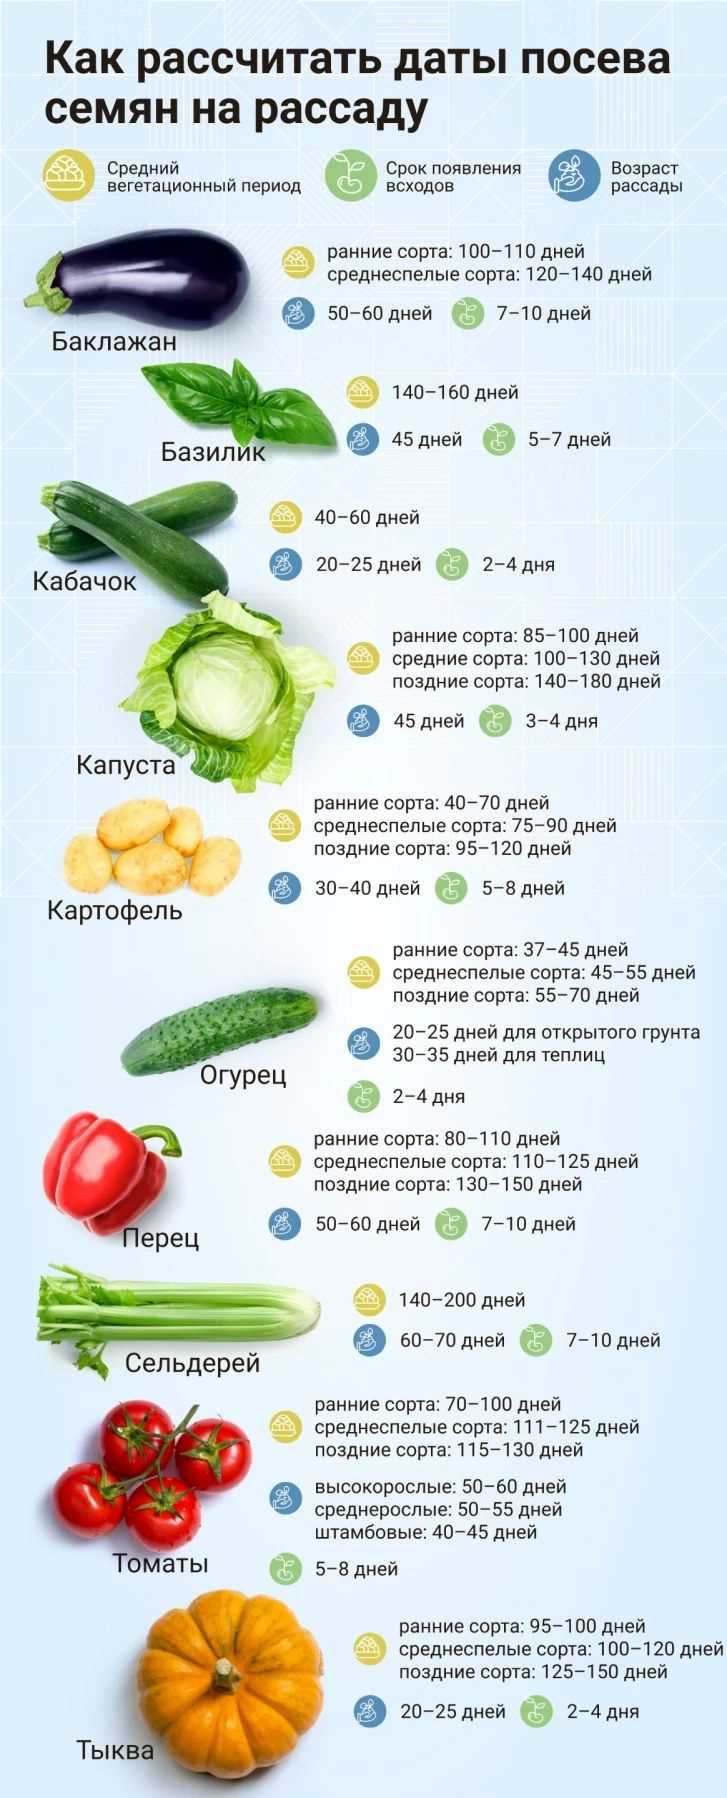 Почему важно знать дату посева овощей на рассаду?